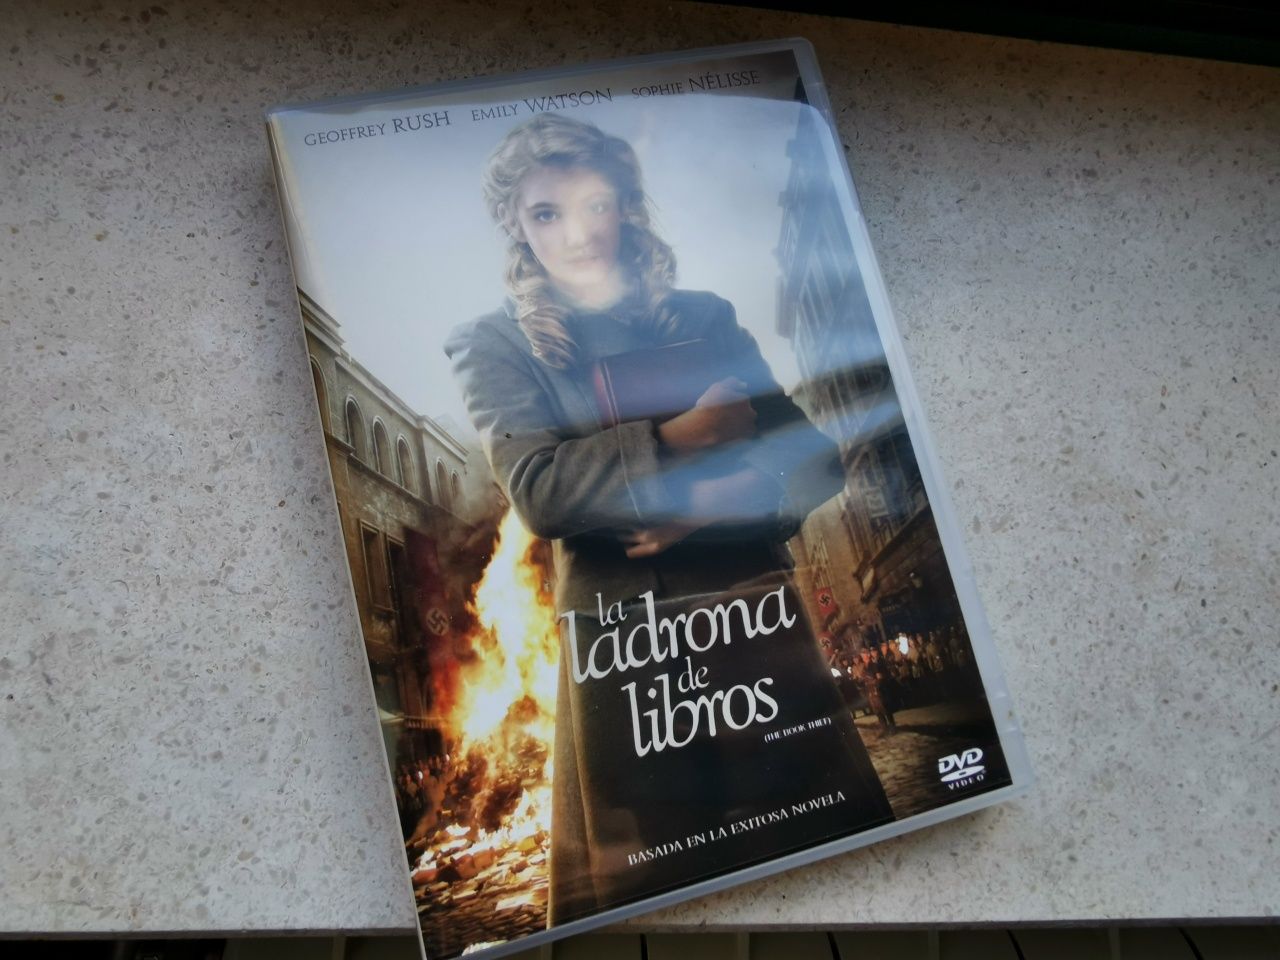 DVD filme "The book thief"